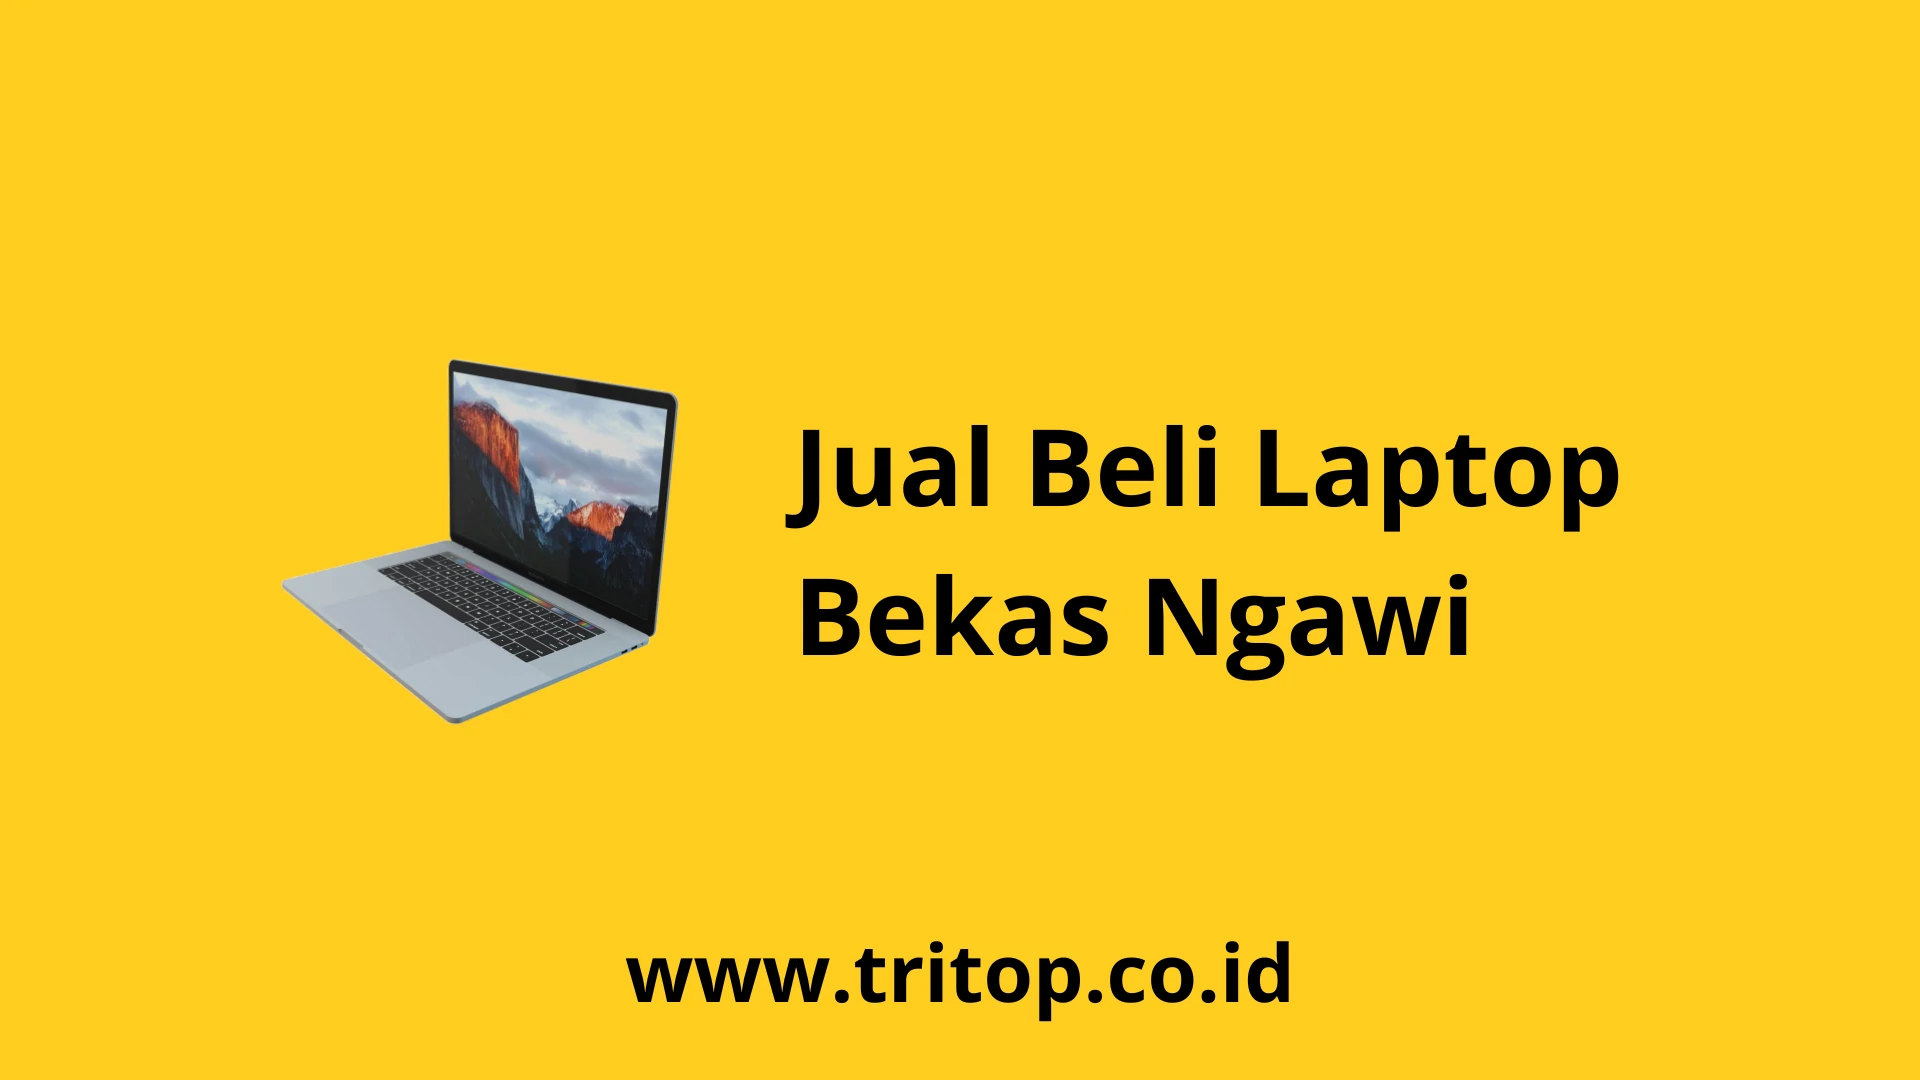 Jual Beli Laptop Bekas Ngawi